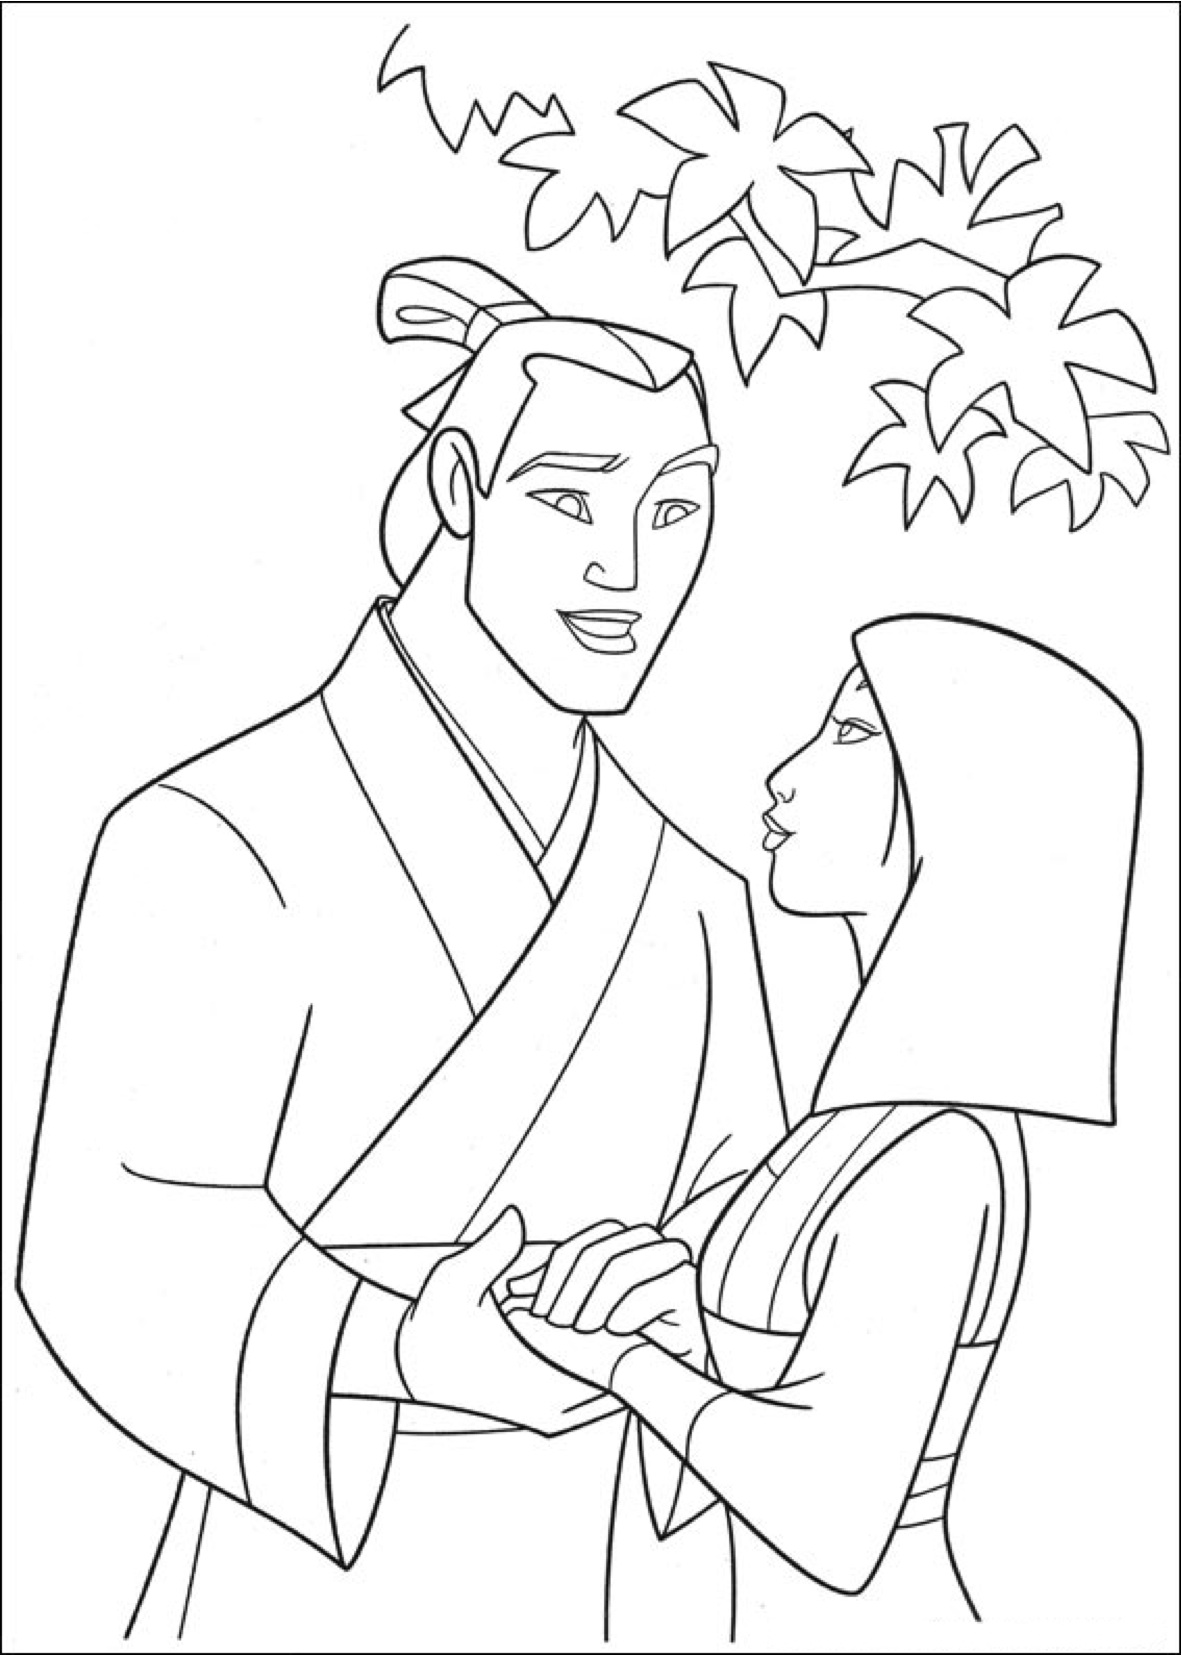 Mulan And Shang coloring page